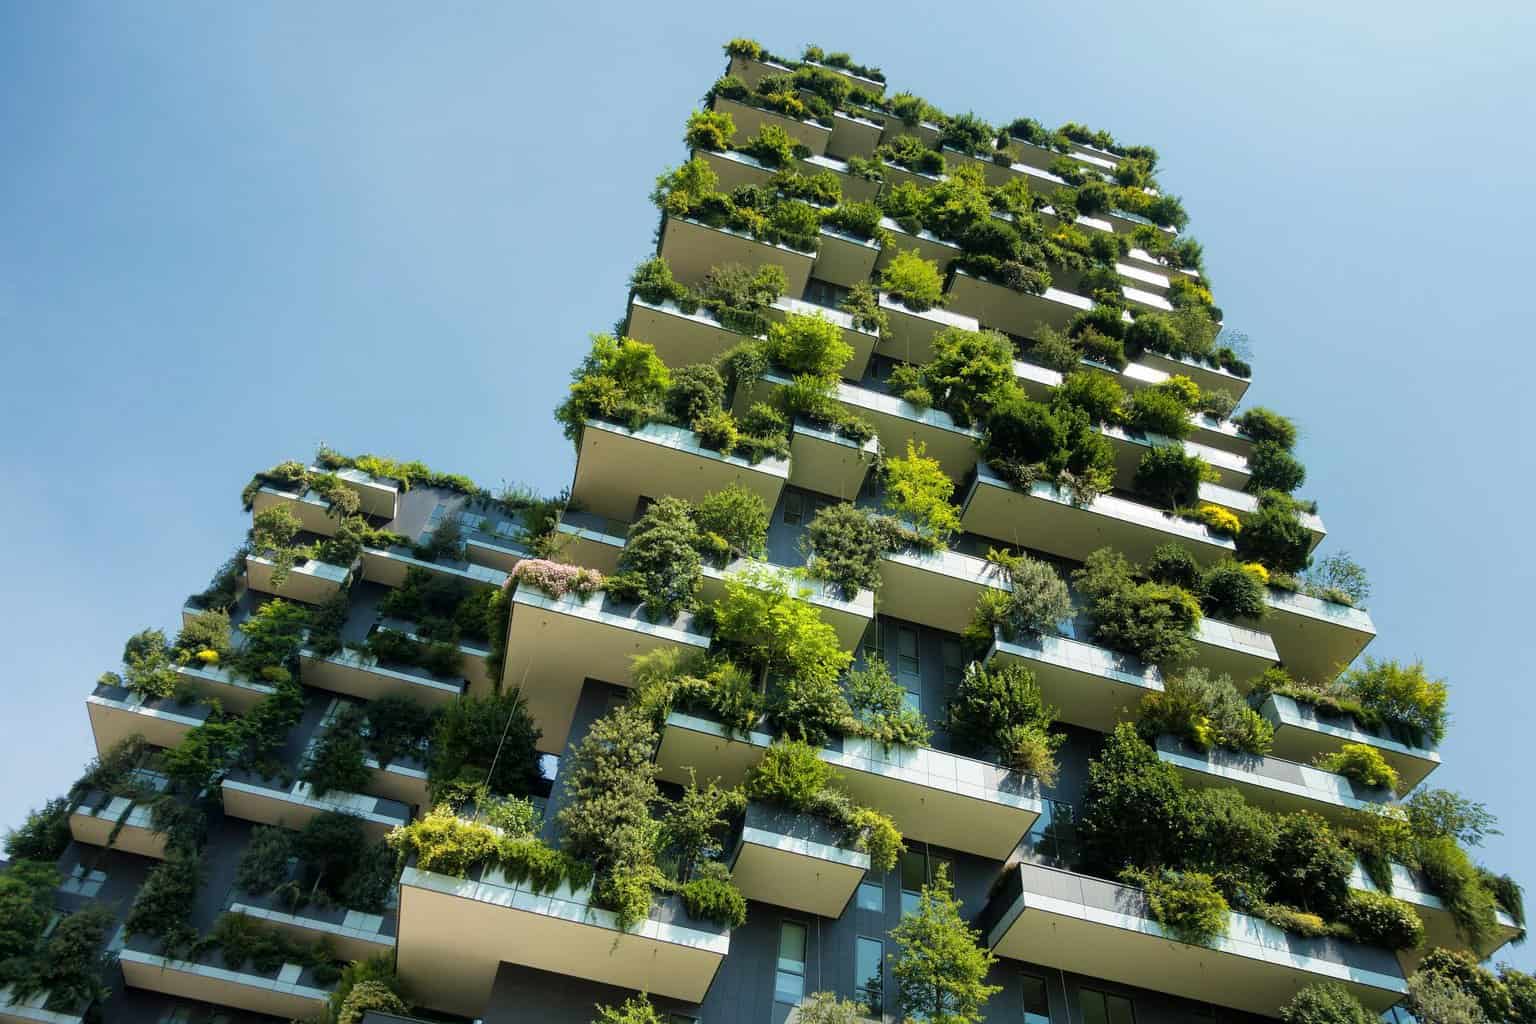 Net-zero buildings Carbon compliance Renewable energy procurement Facility management Emissions reduction